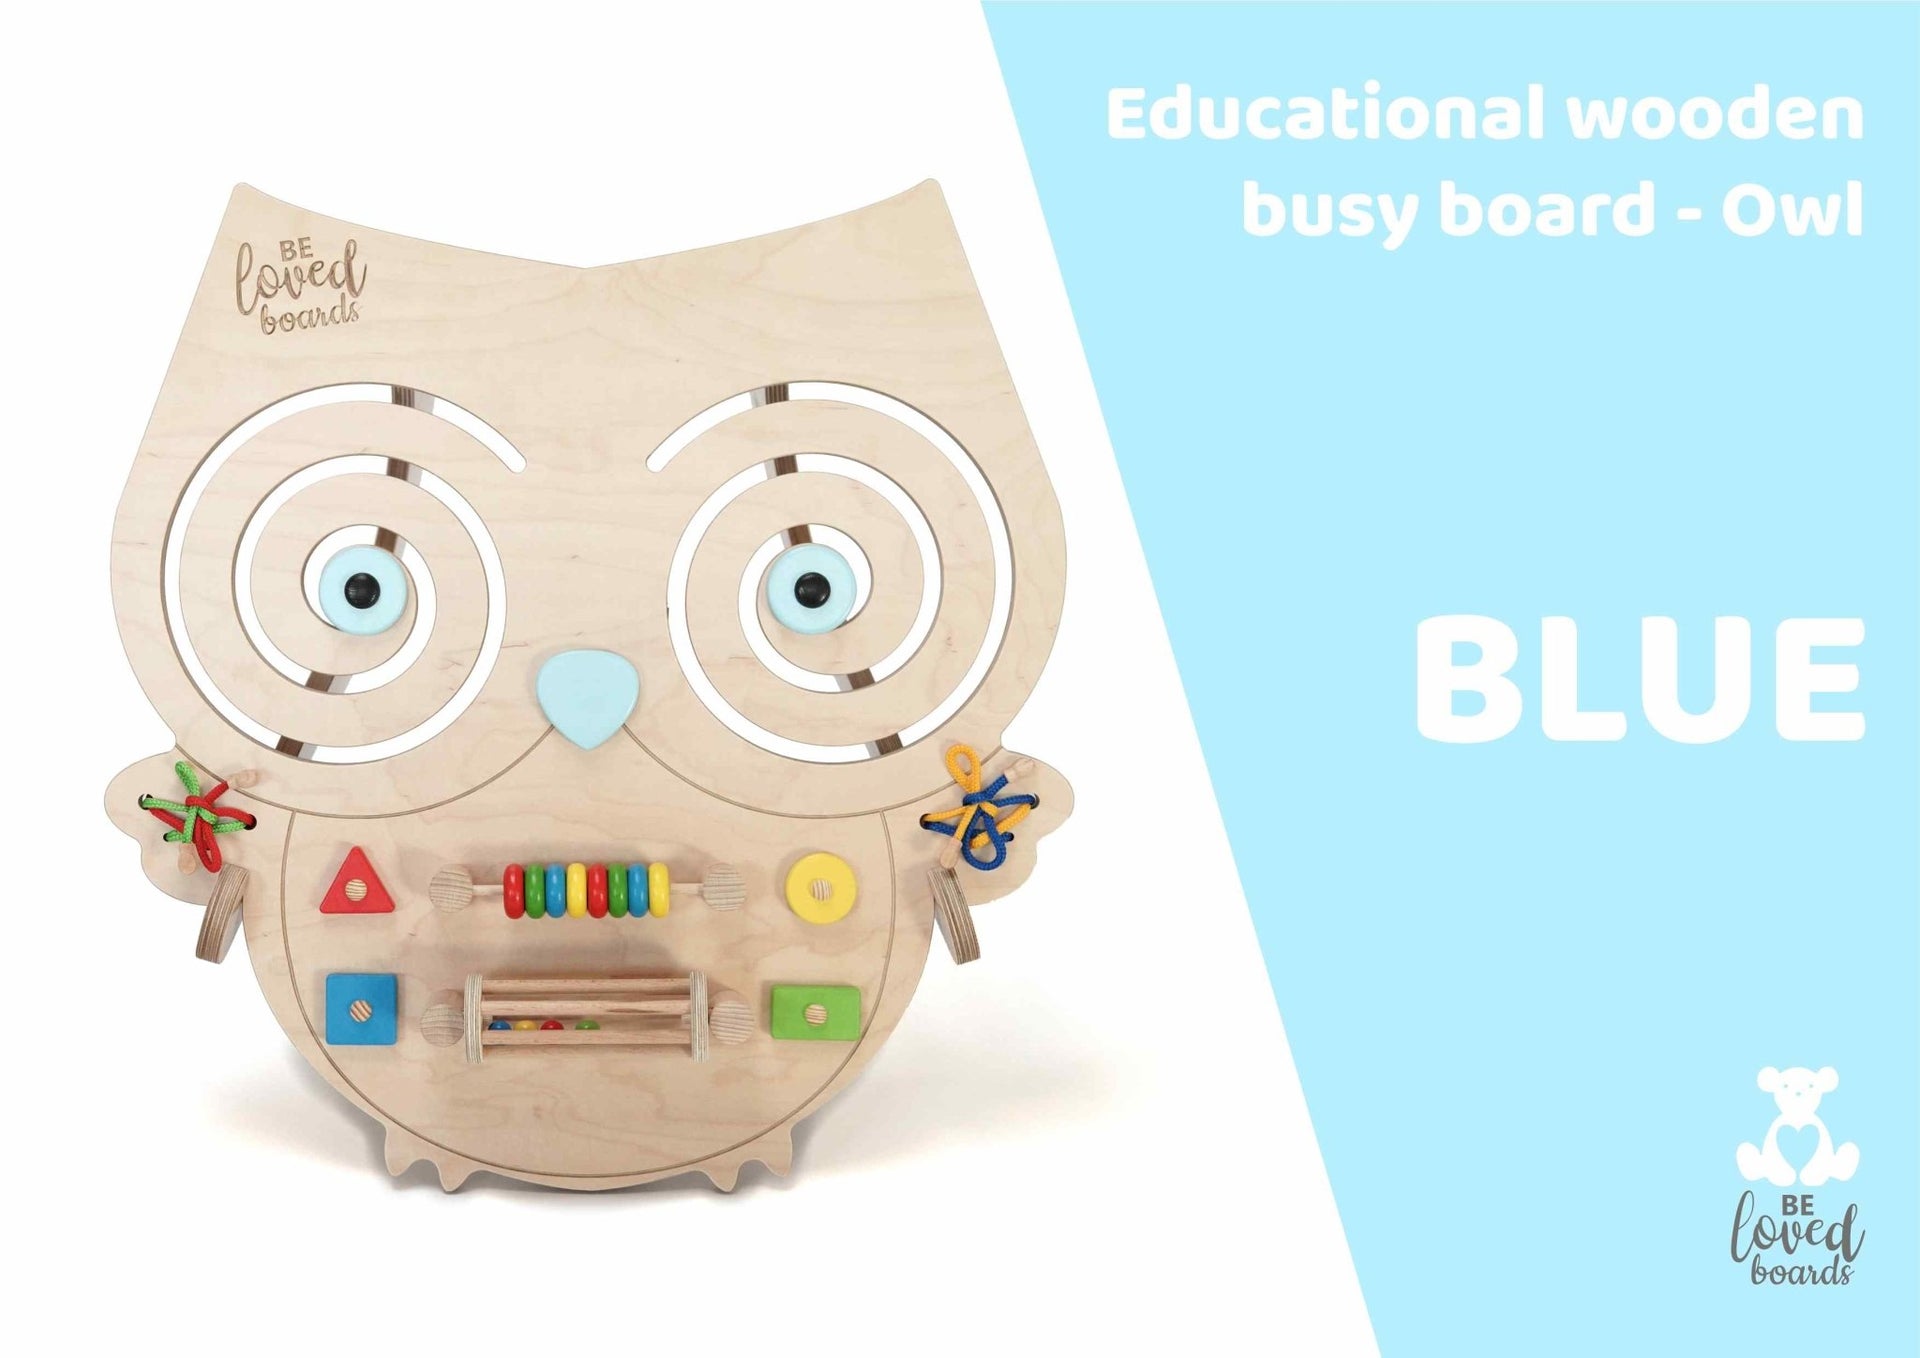 Busy board - Owl - Beloved boards